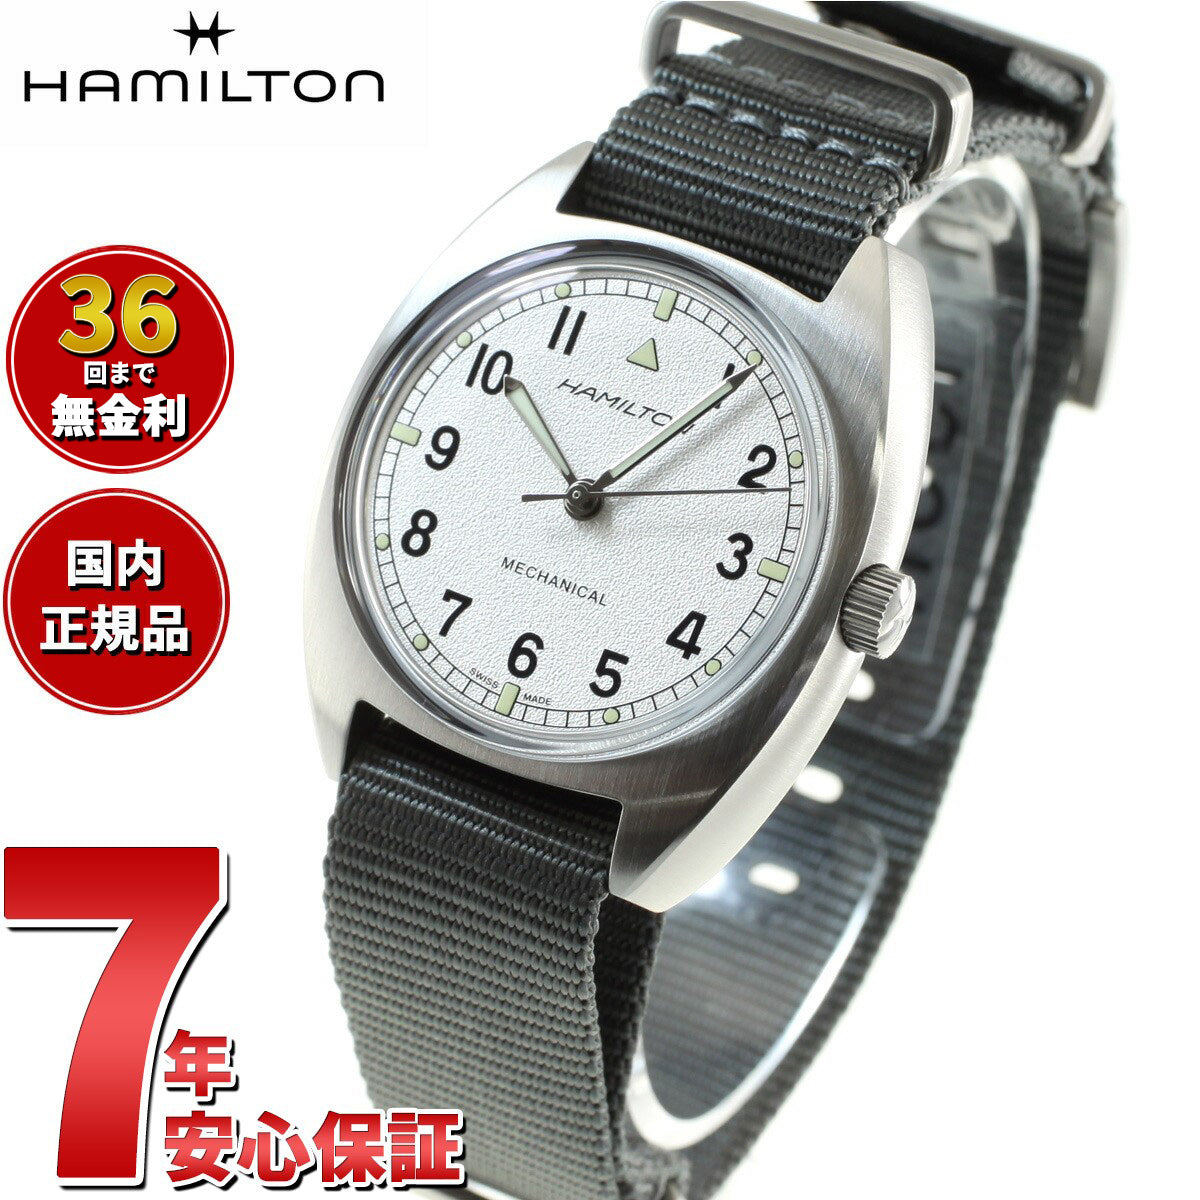 ハミルトン HAMILTON 腕時計 メンズ H76419951 カーキ アビエーション パイロット パイオニア メカニカル KHAKI AVIATION PILOT PIONEER MECHANICAL 手巻き シルバーxグレー アナログ表示